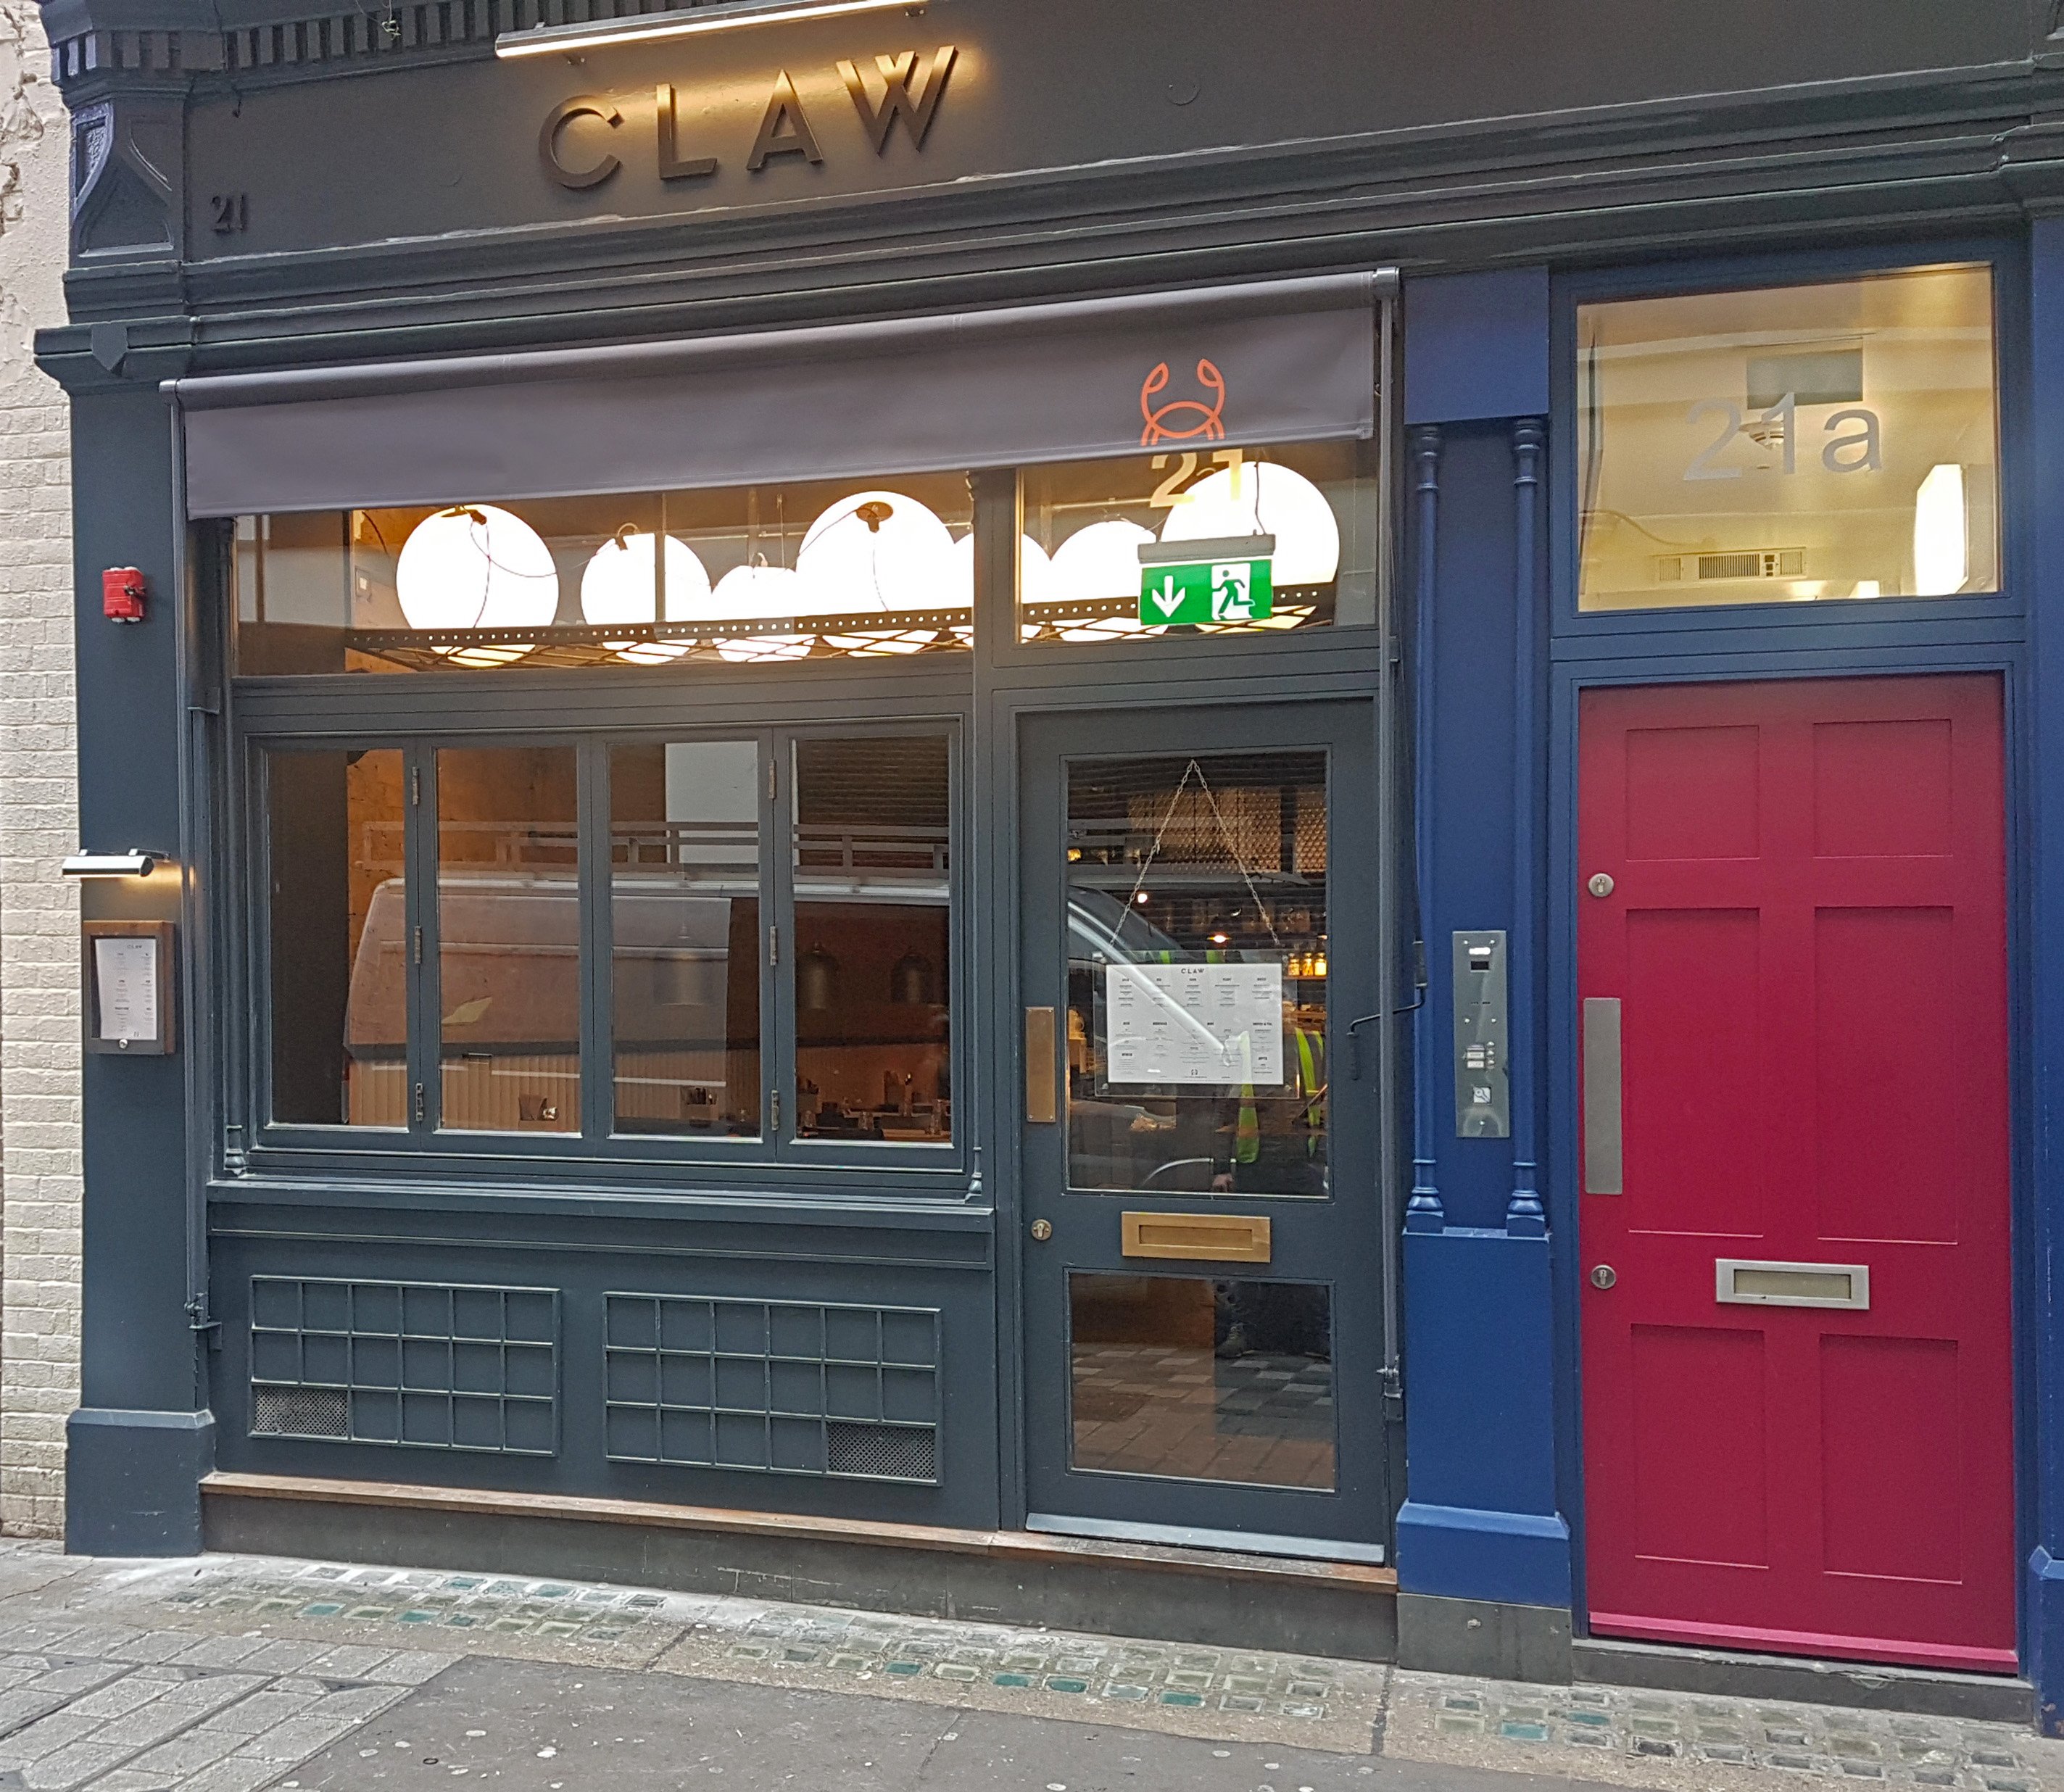 Greenwich awning CLAW Restaurant